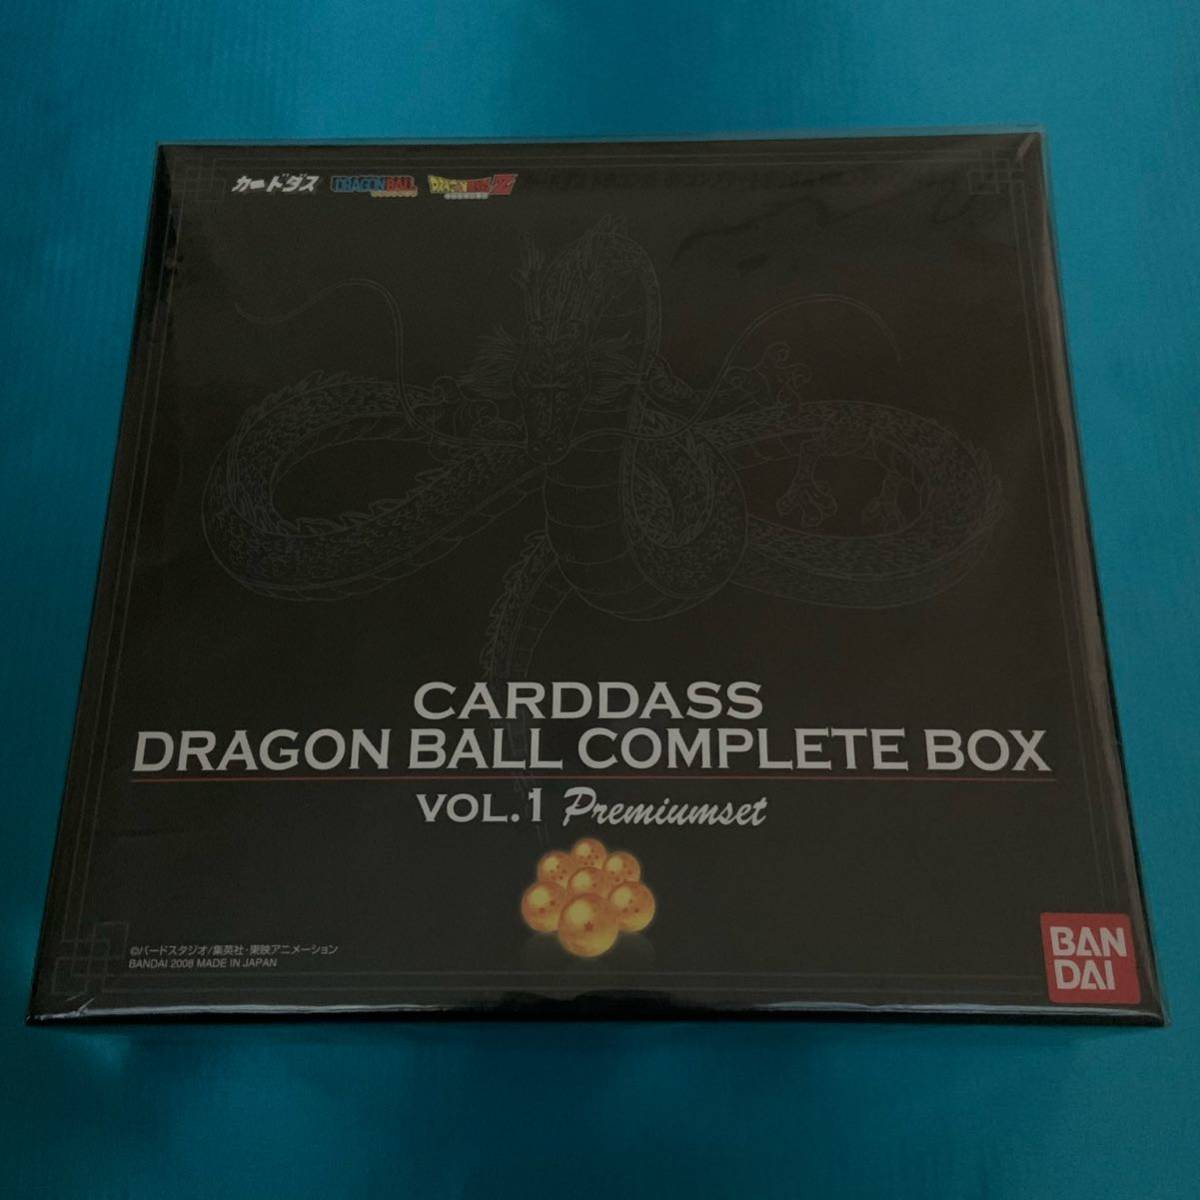 ドラゴンボールカードダス COMPLETE BOX Vol.1